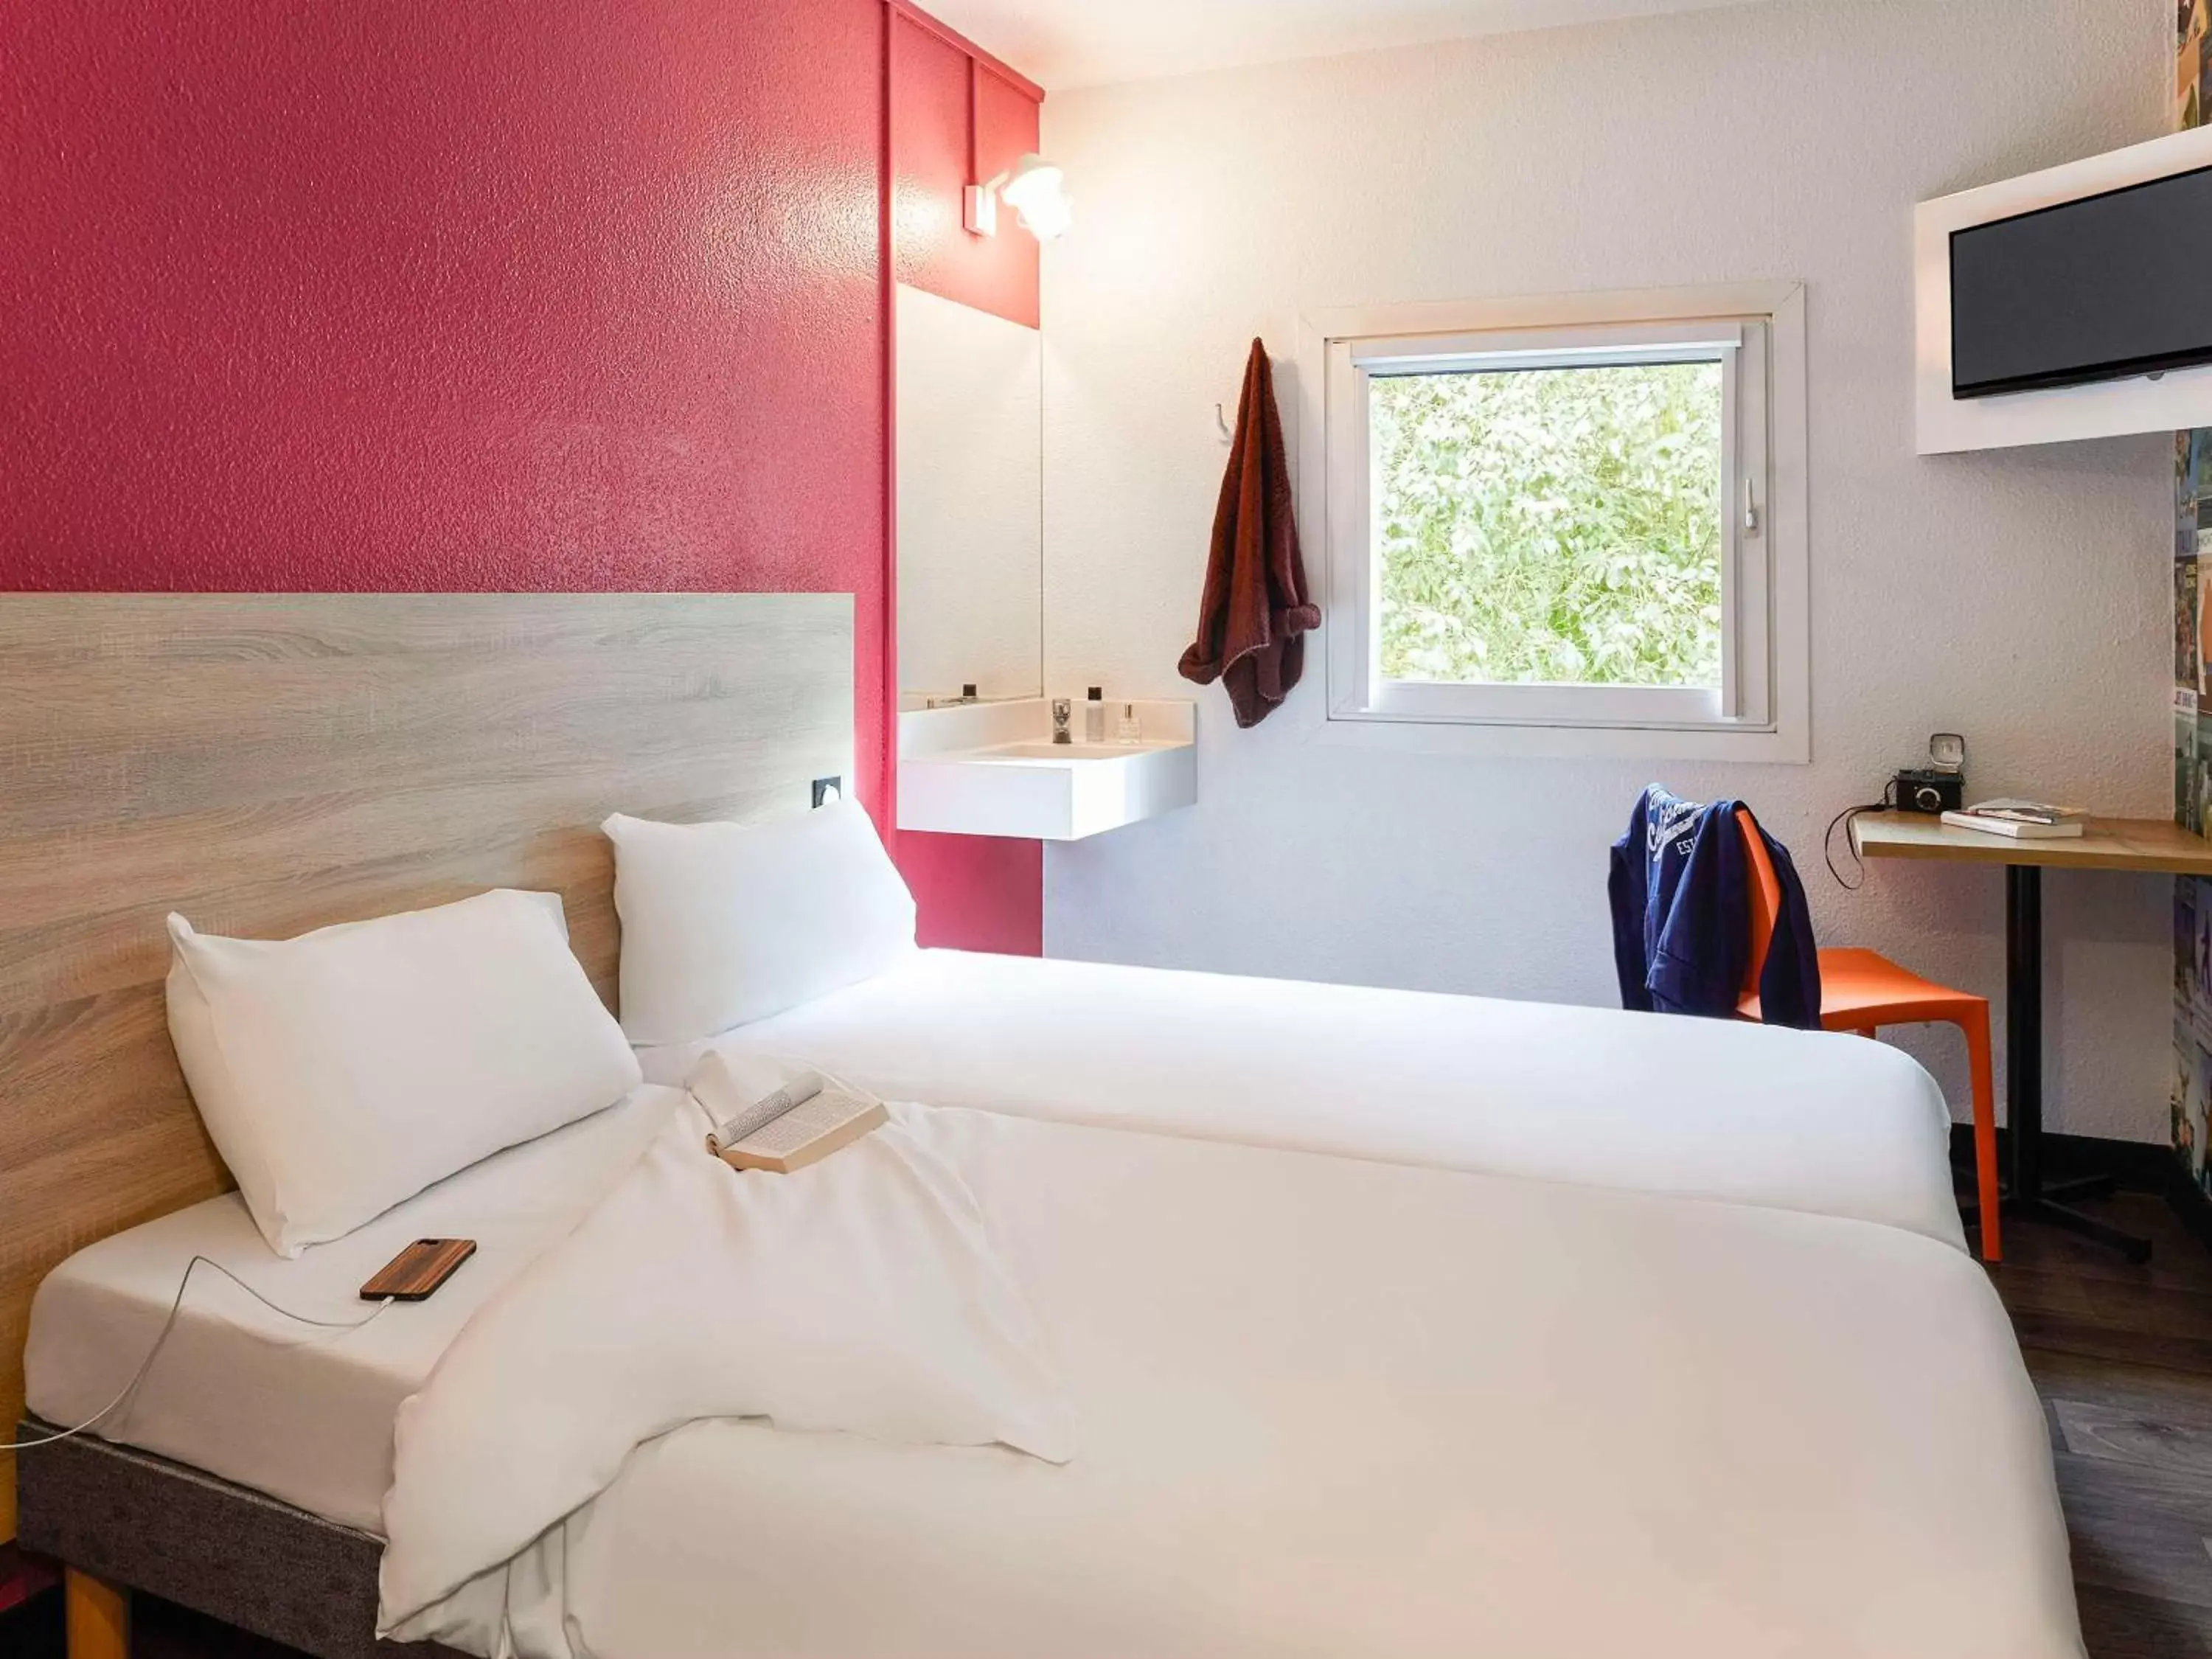 Bedroom, Bed in hotelF1 Paris Porte de Châtillon